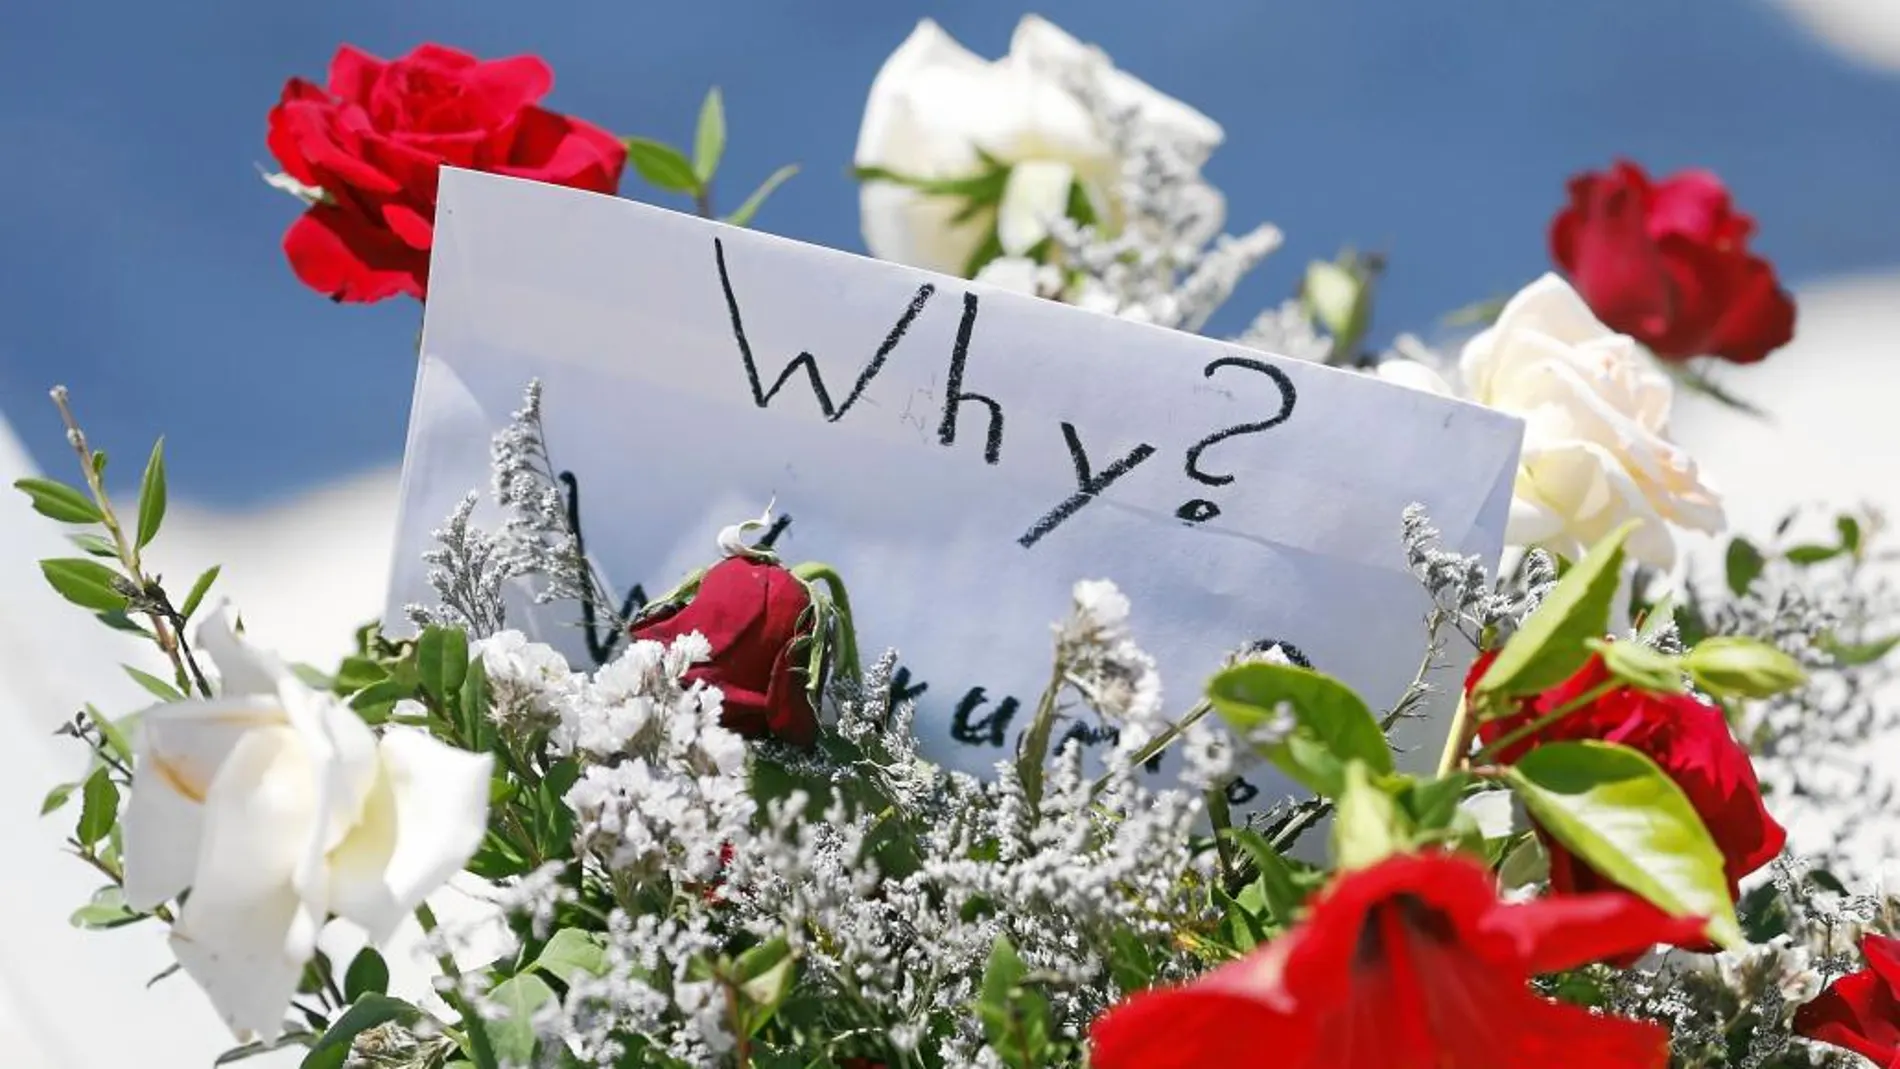 ¿POR QUÉ? Turistas y tunecinos colocaron ramo de flores en honor a las víctimas y se preguntaban por la sinrazón del terrorismo